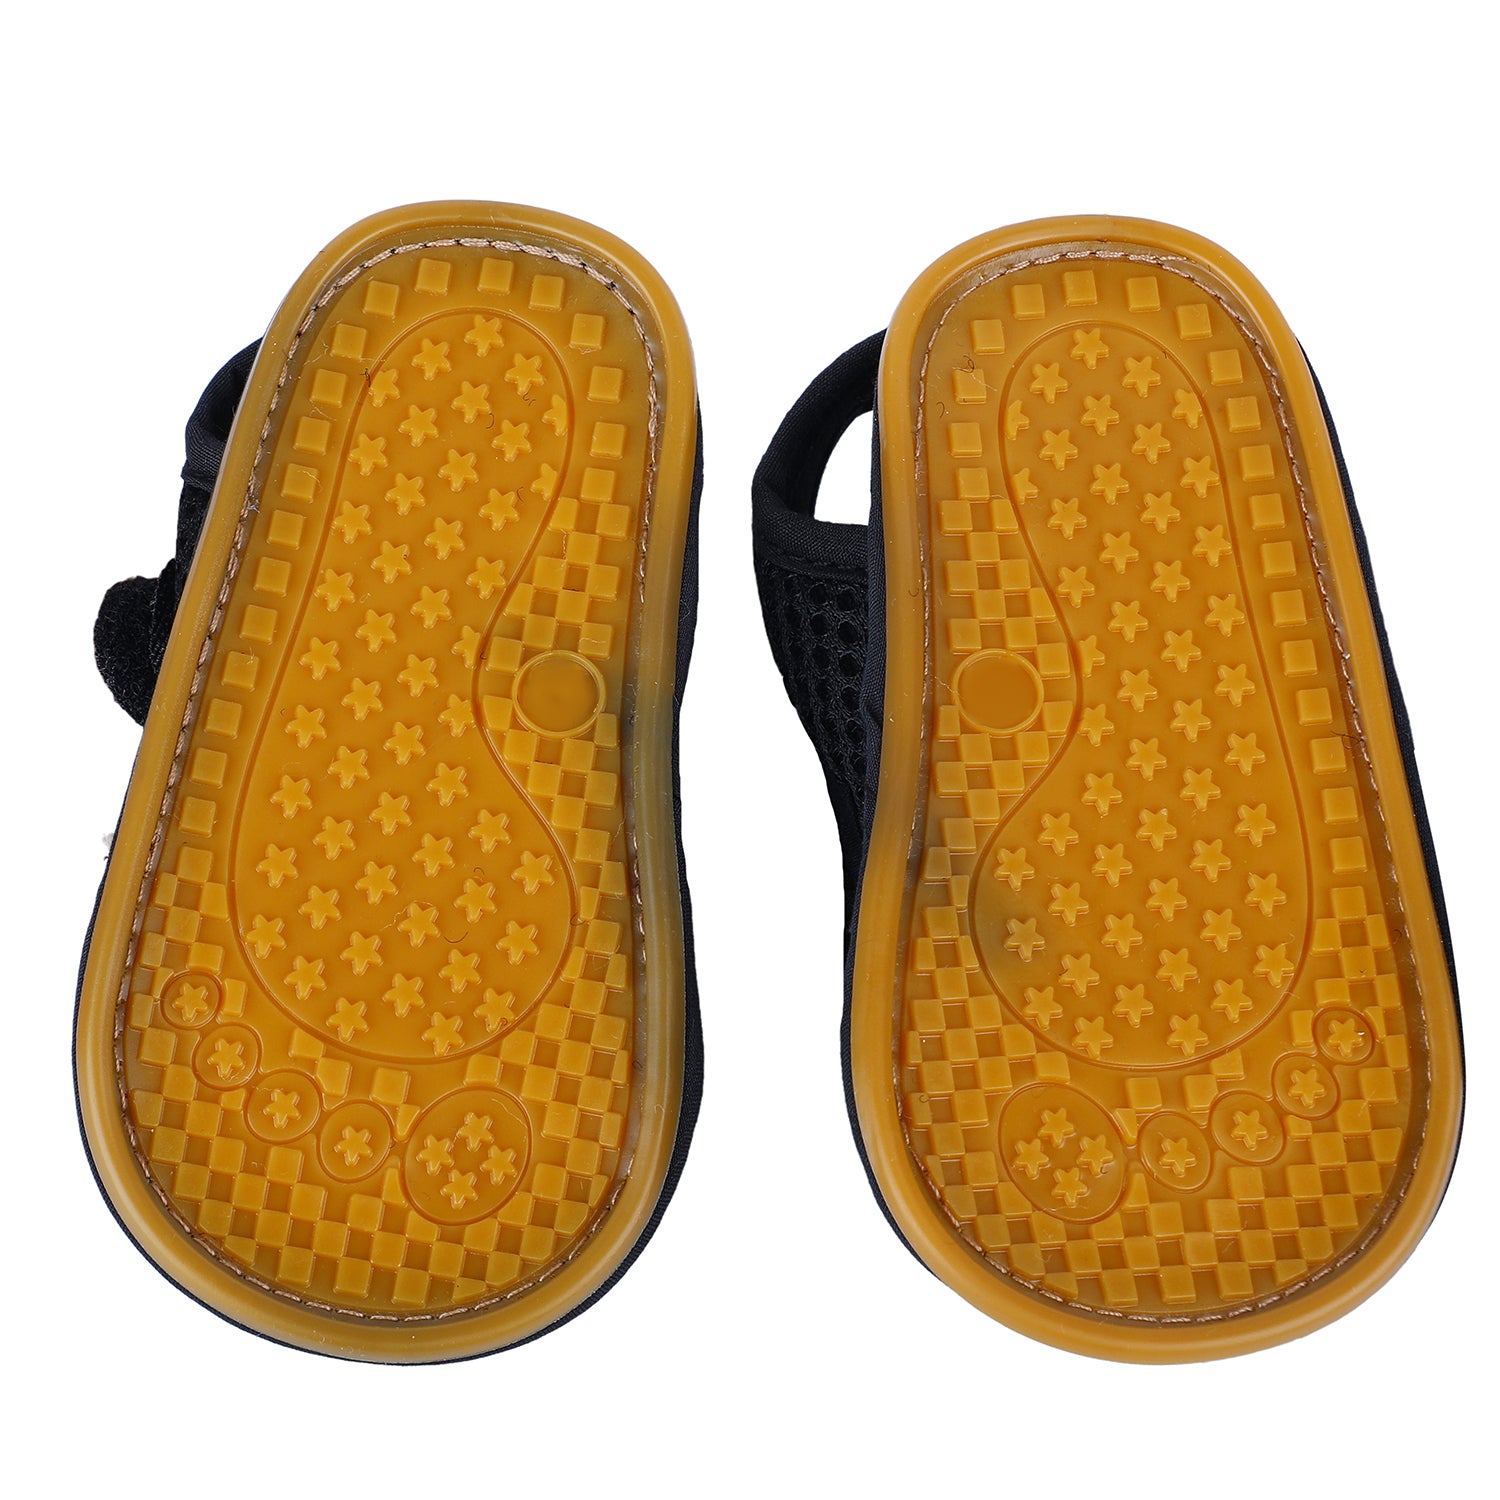 Baby Moo Solid Hookloop Comfortable Anti-skid Floater Sandals - Black